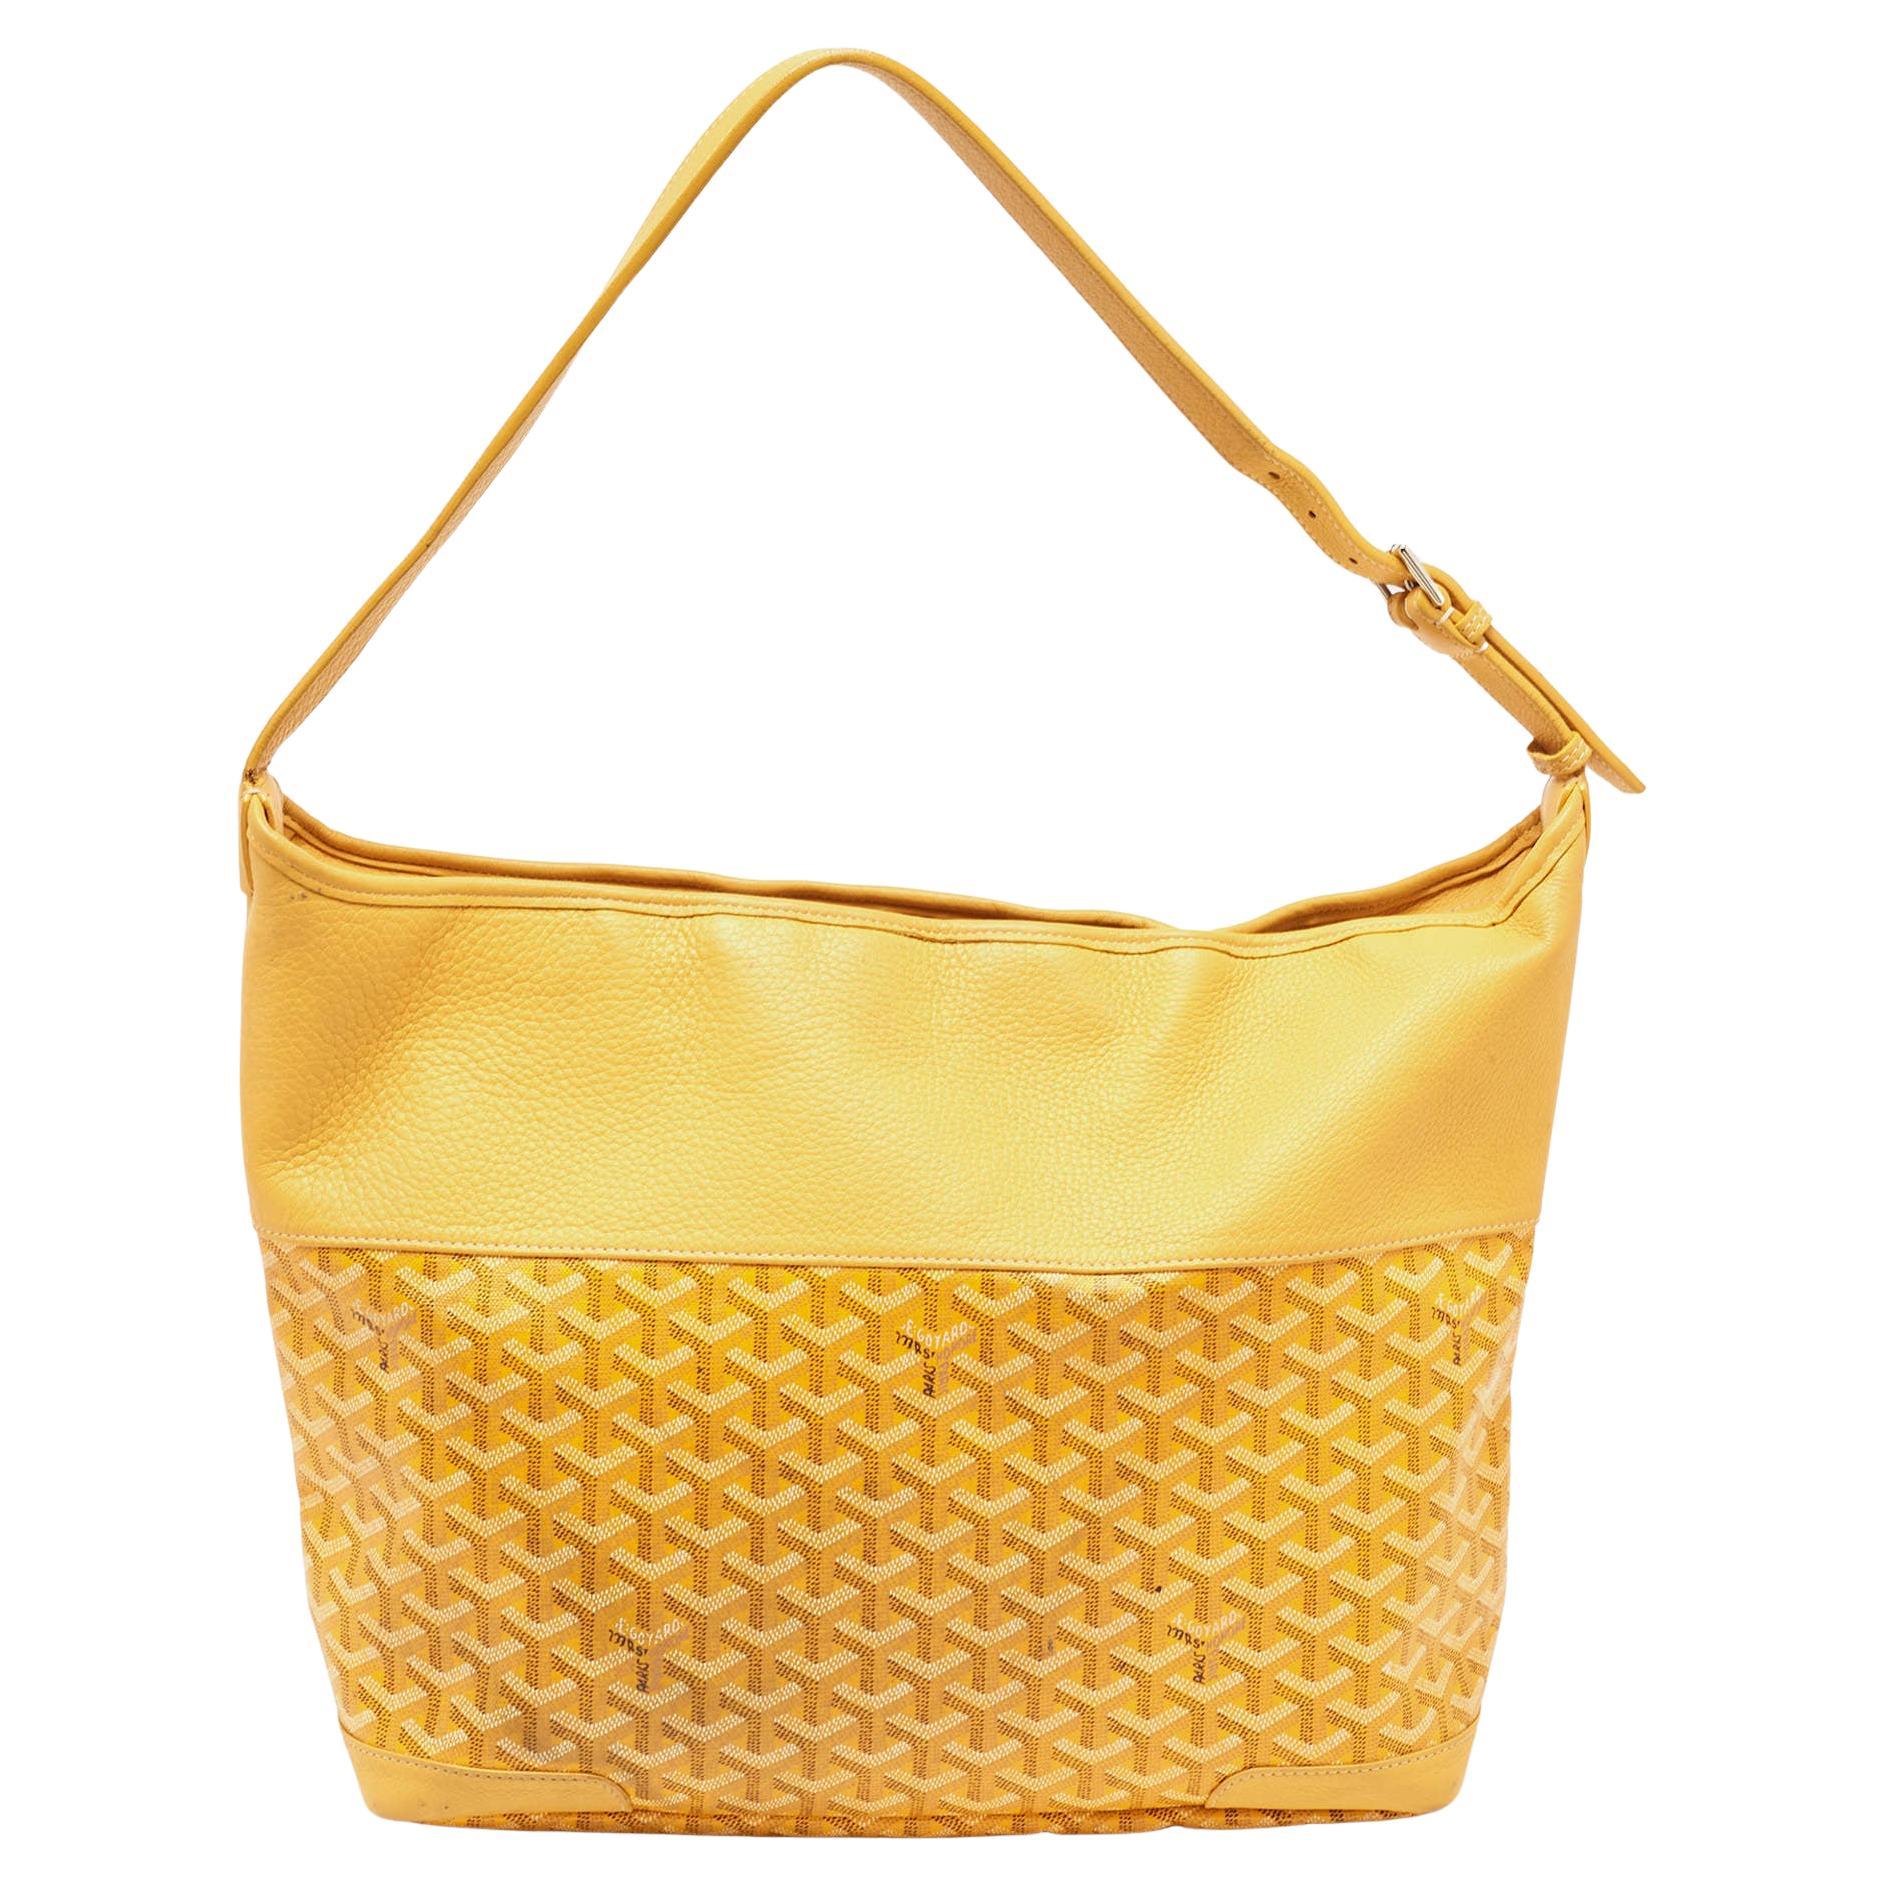 Ce sac à main de Goyard réalisera le rêve d'innombrables femmes. Confectionné en toile enduite et en cuir, ce sac est d'un jaune éclatant. Tandis que la forme et les détails rehaussent sa beauté, l'intérieur en tissu accueillera consciencieusement